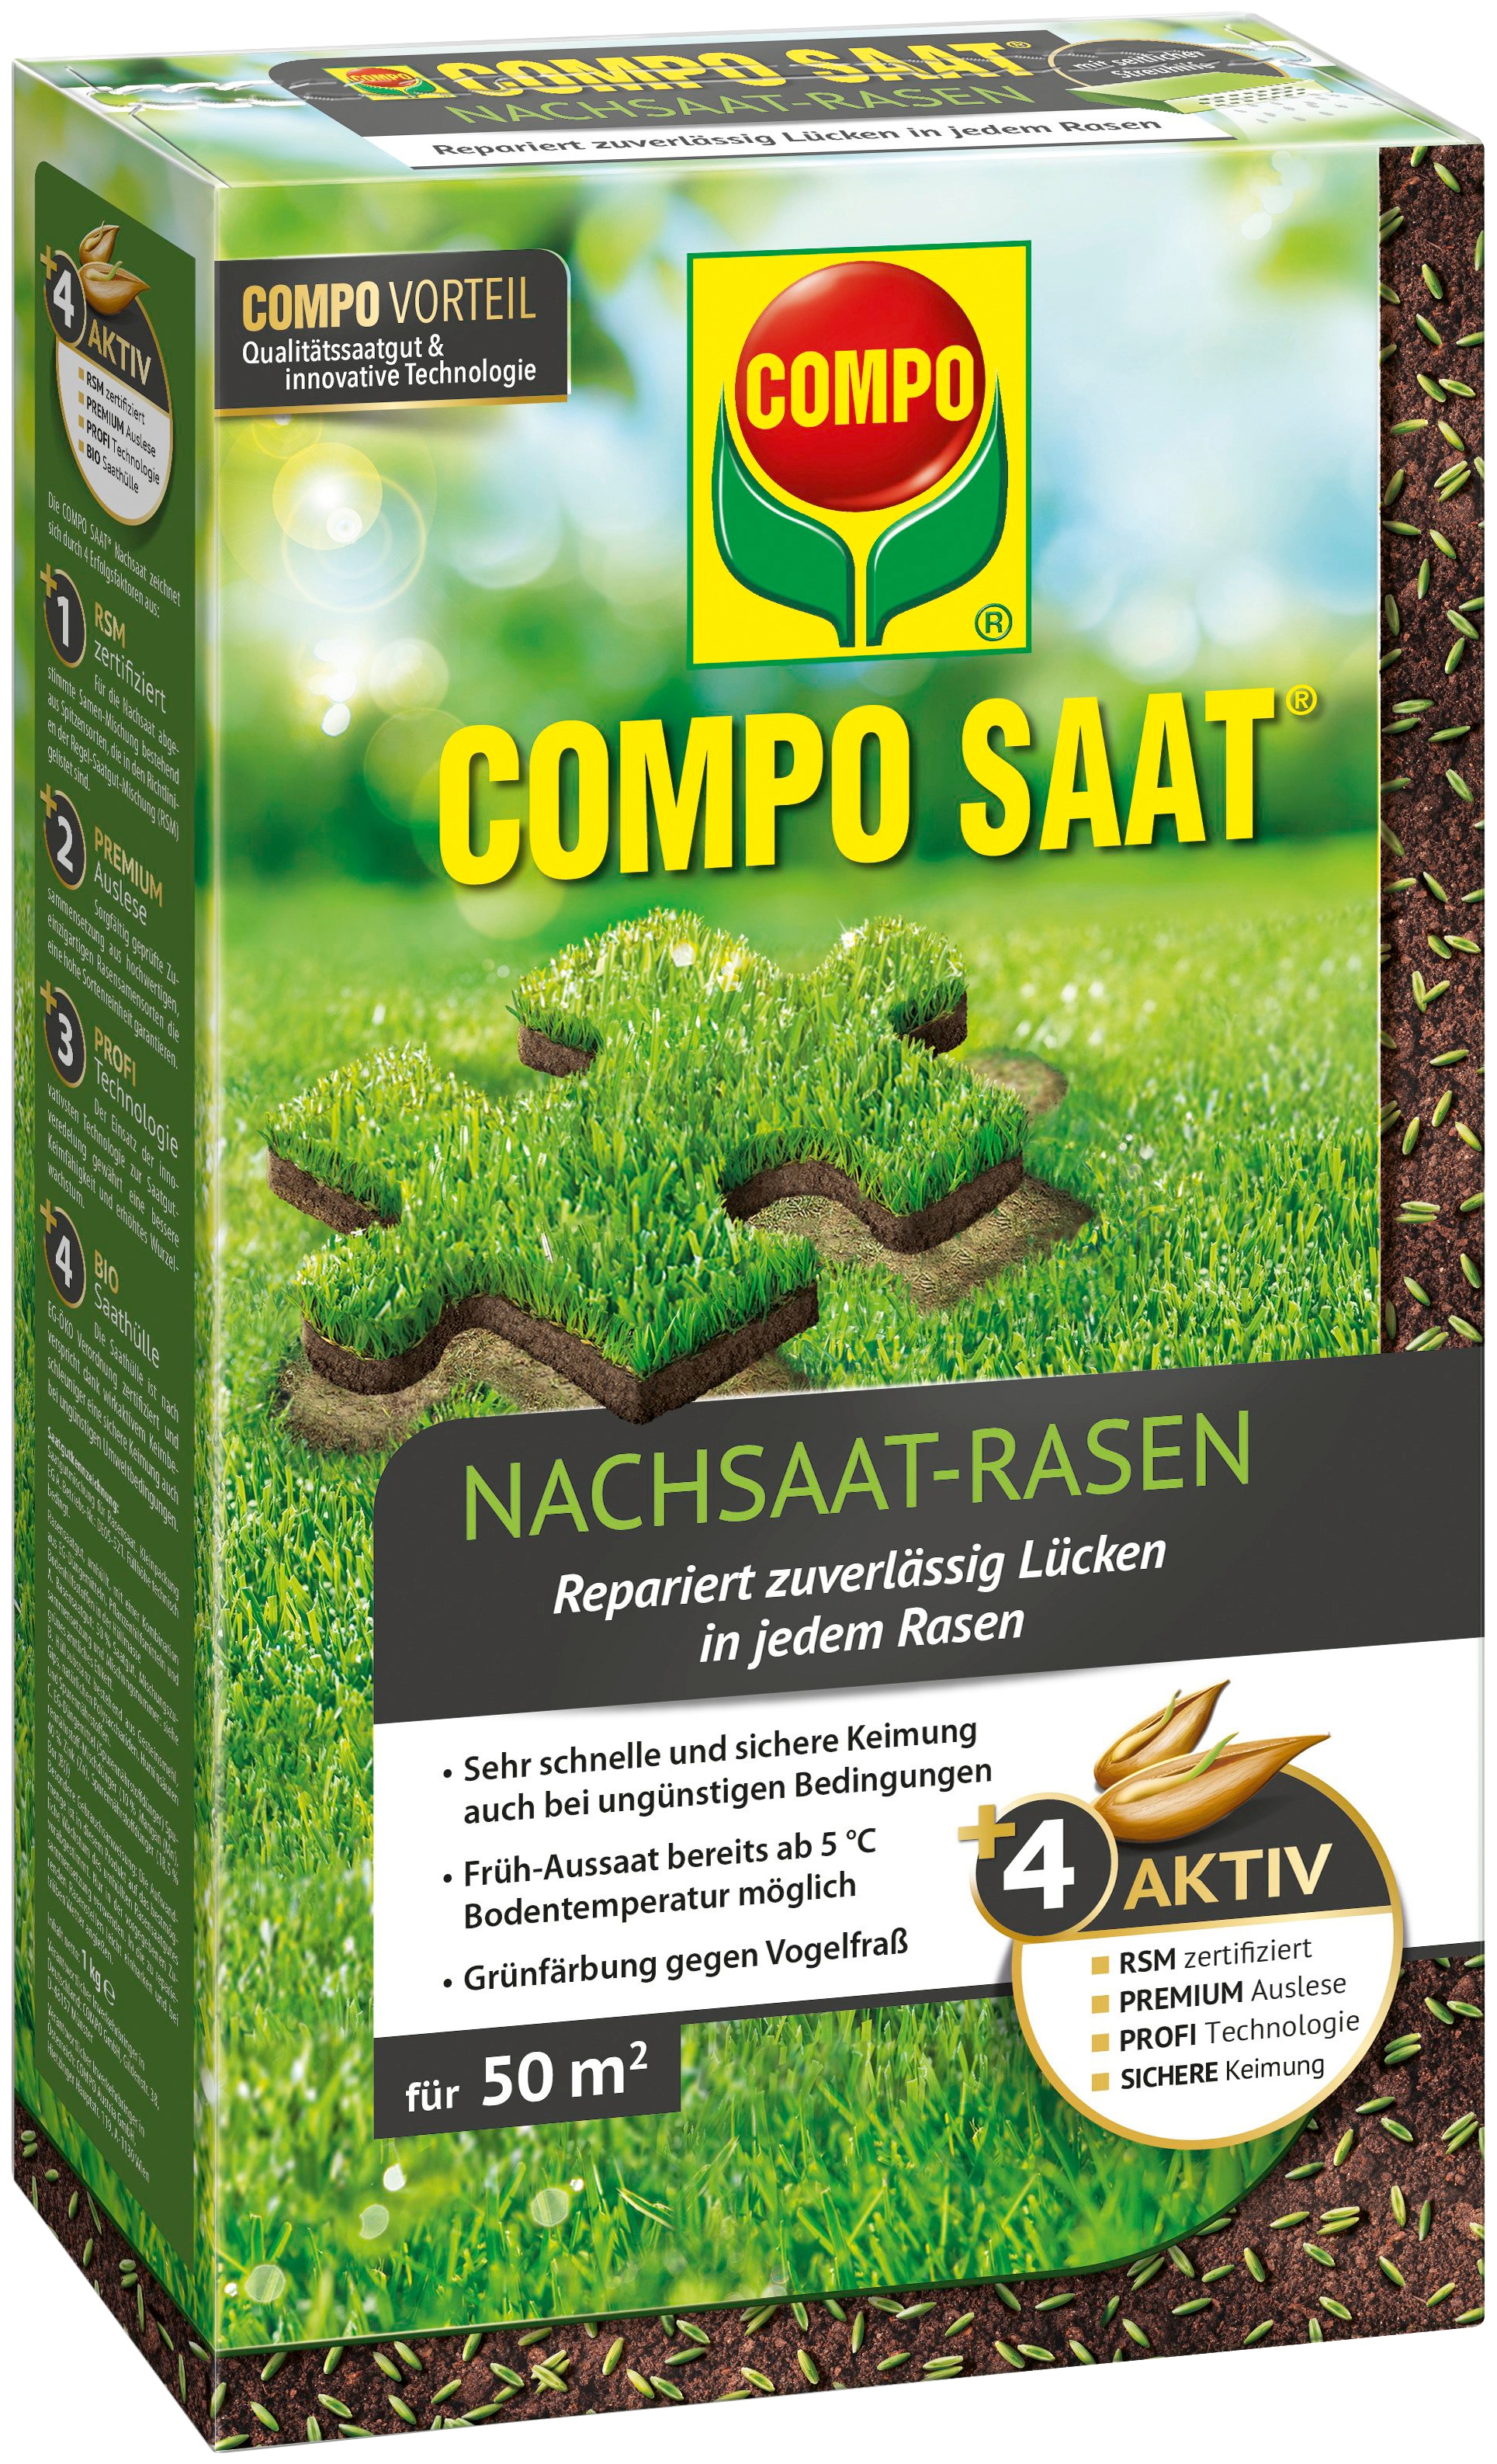 Compo Rasensamen »COMPO SAAT®«, Nachsaat-Rasen, 1 kg, für 50 m²